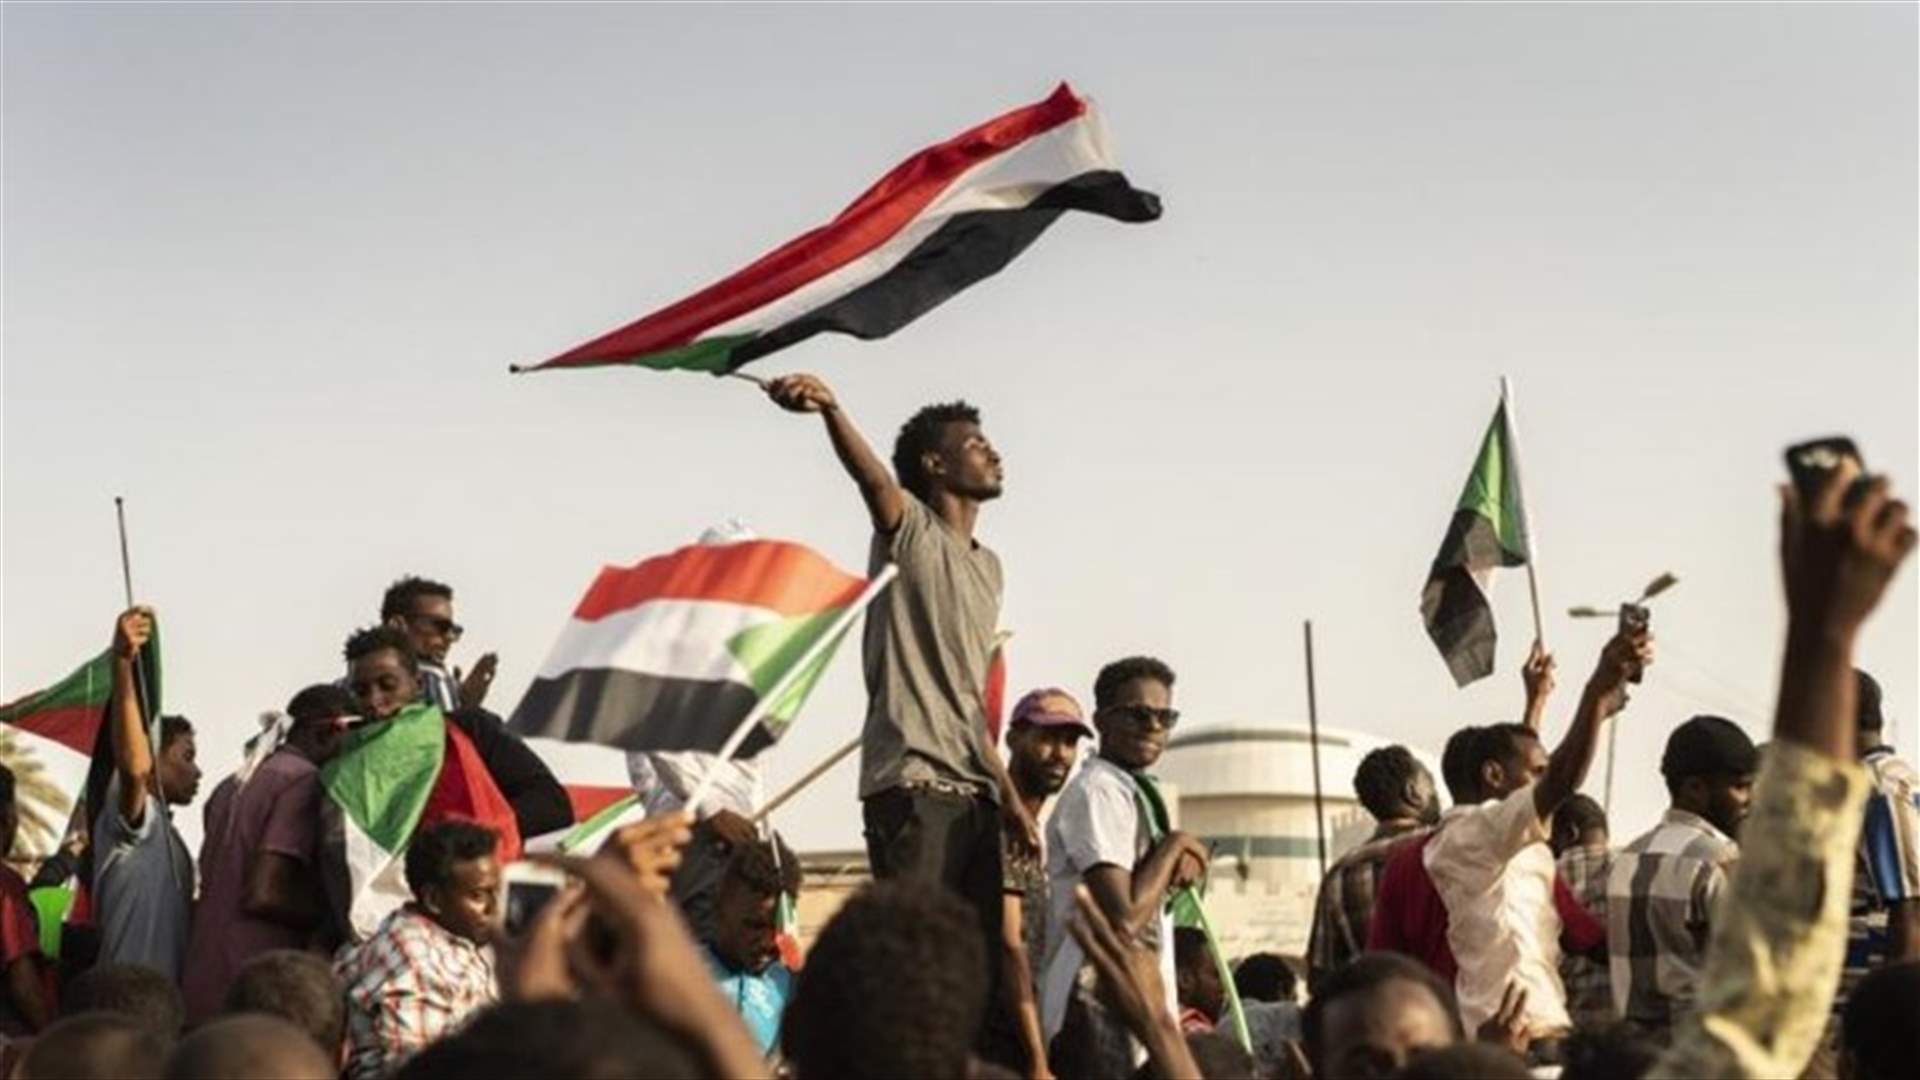 استئناف المفاوضات بين الجيش والمحتجين في السودان حول رئاسة وتشكيل مجلس انتقالي حاكم